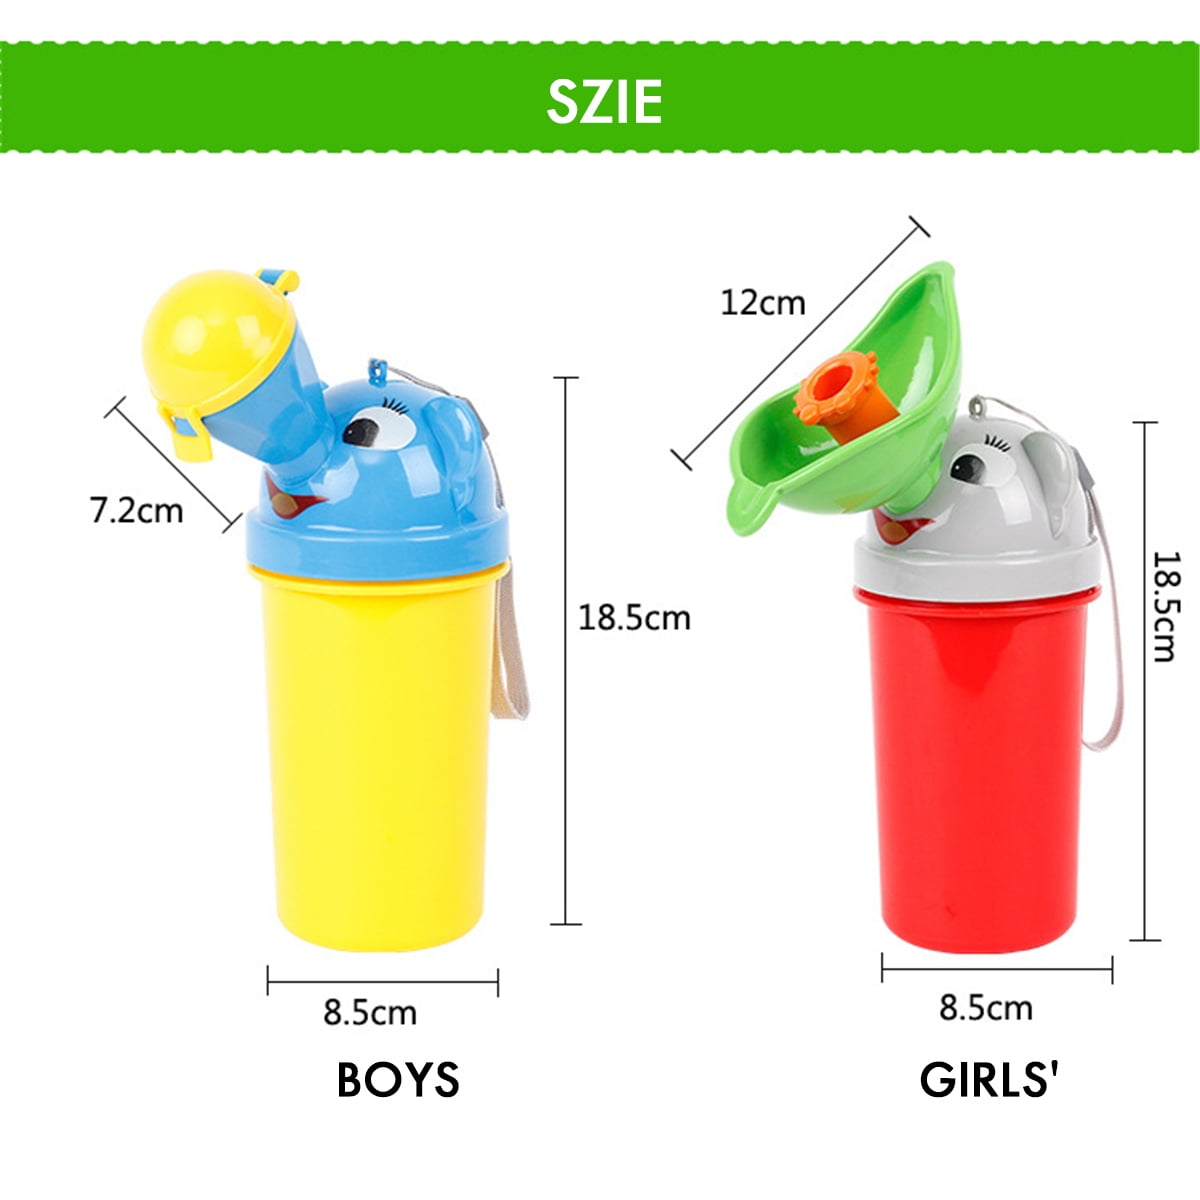 Tragbares Baby Kind Töpfchen Urinal Mehrweg Pee Training Cup Notfall Toilette für Camping Auto Reisen für Jungen & Mädchen 